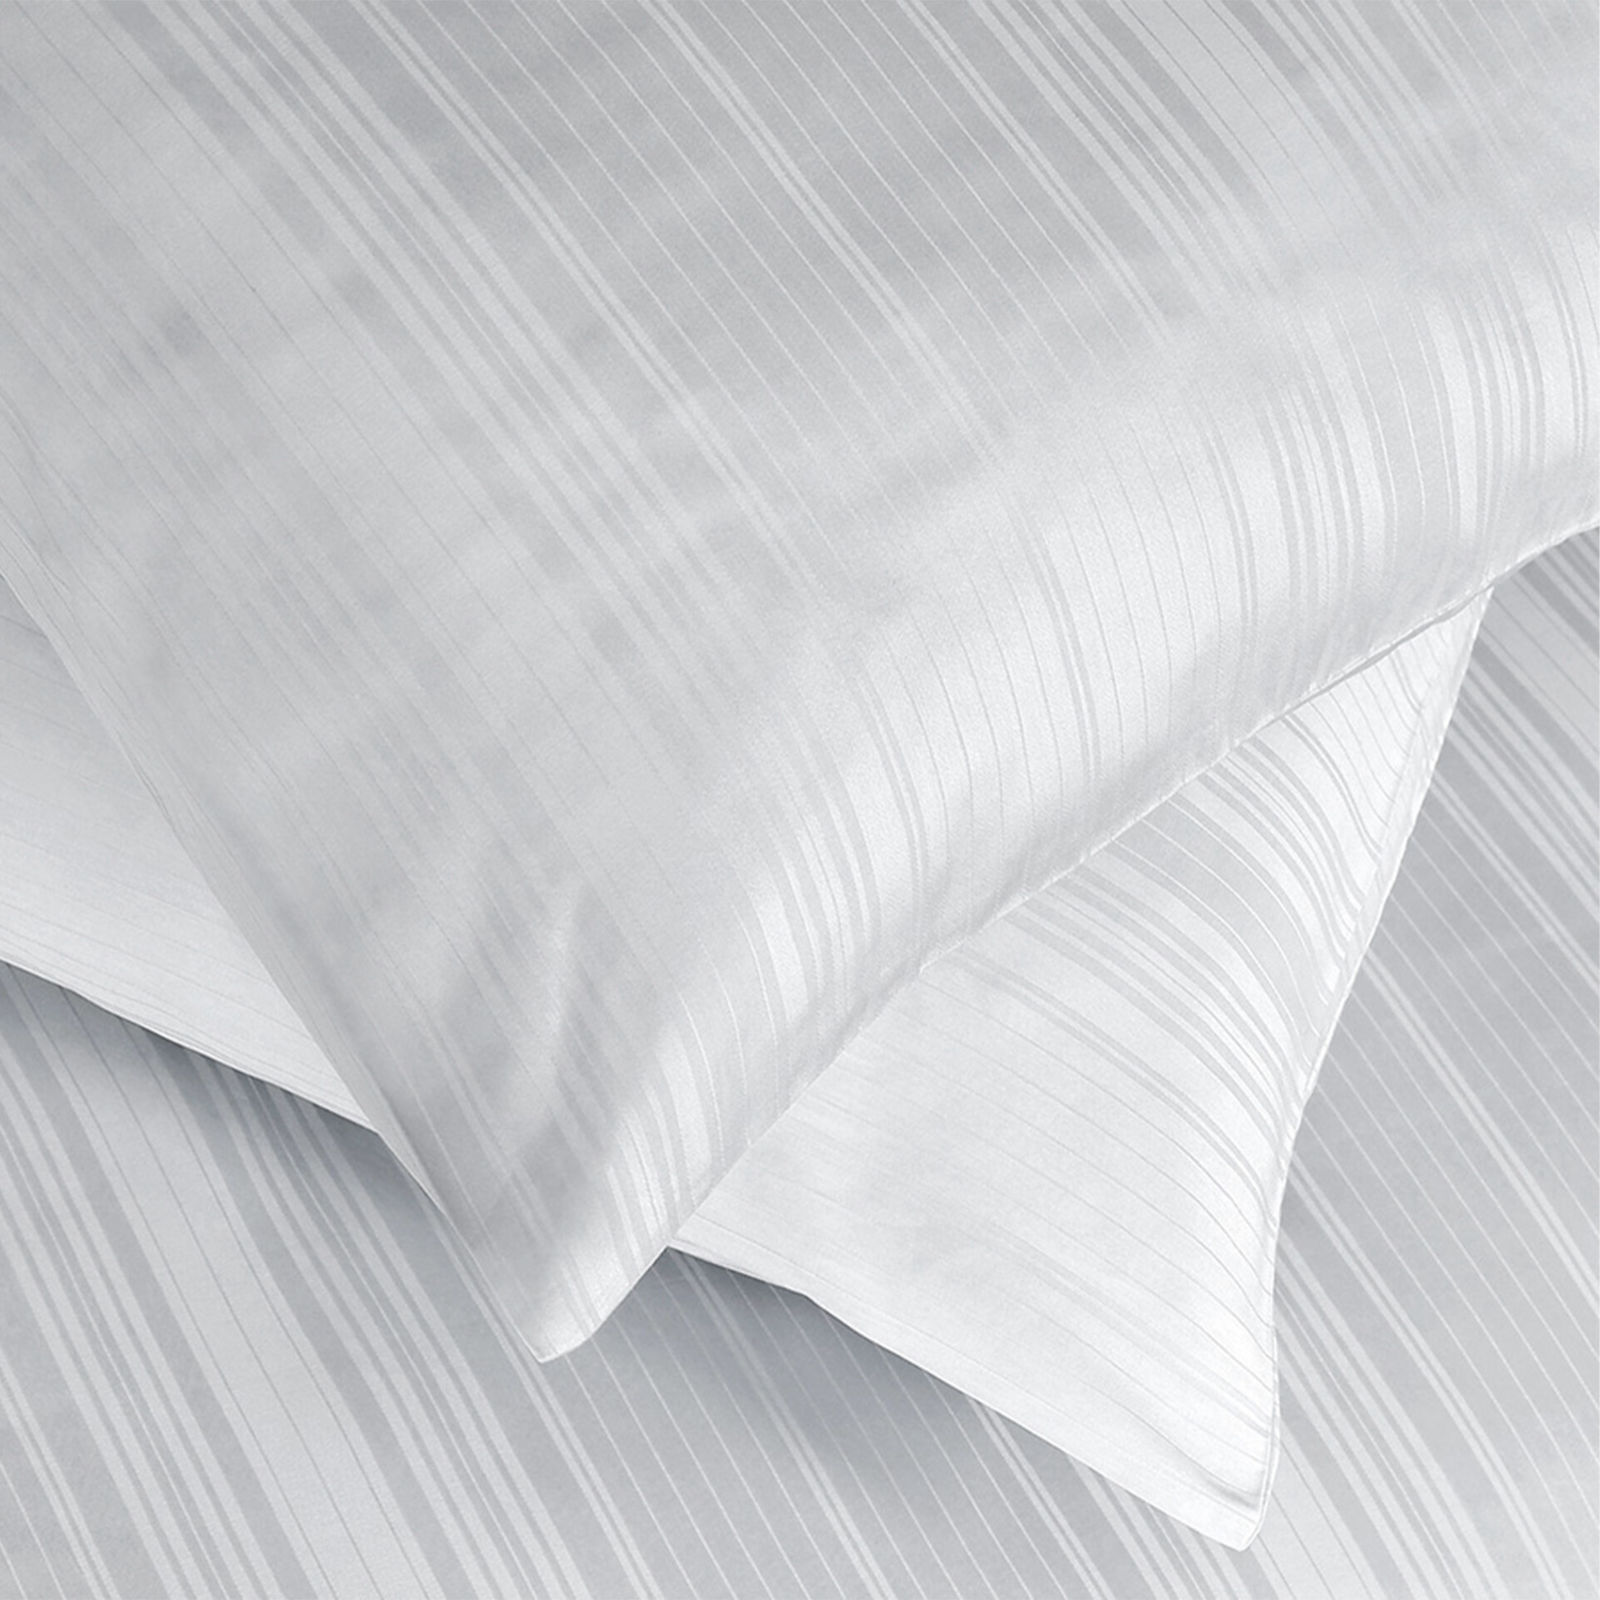 Damaškové posteľné obliečky so saténovým vzhľadom Deluxe - drobné sivé prúžky